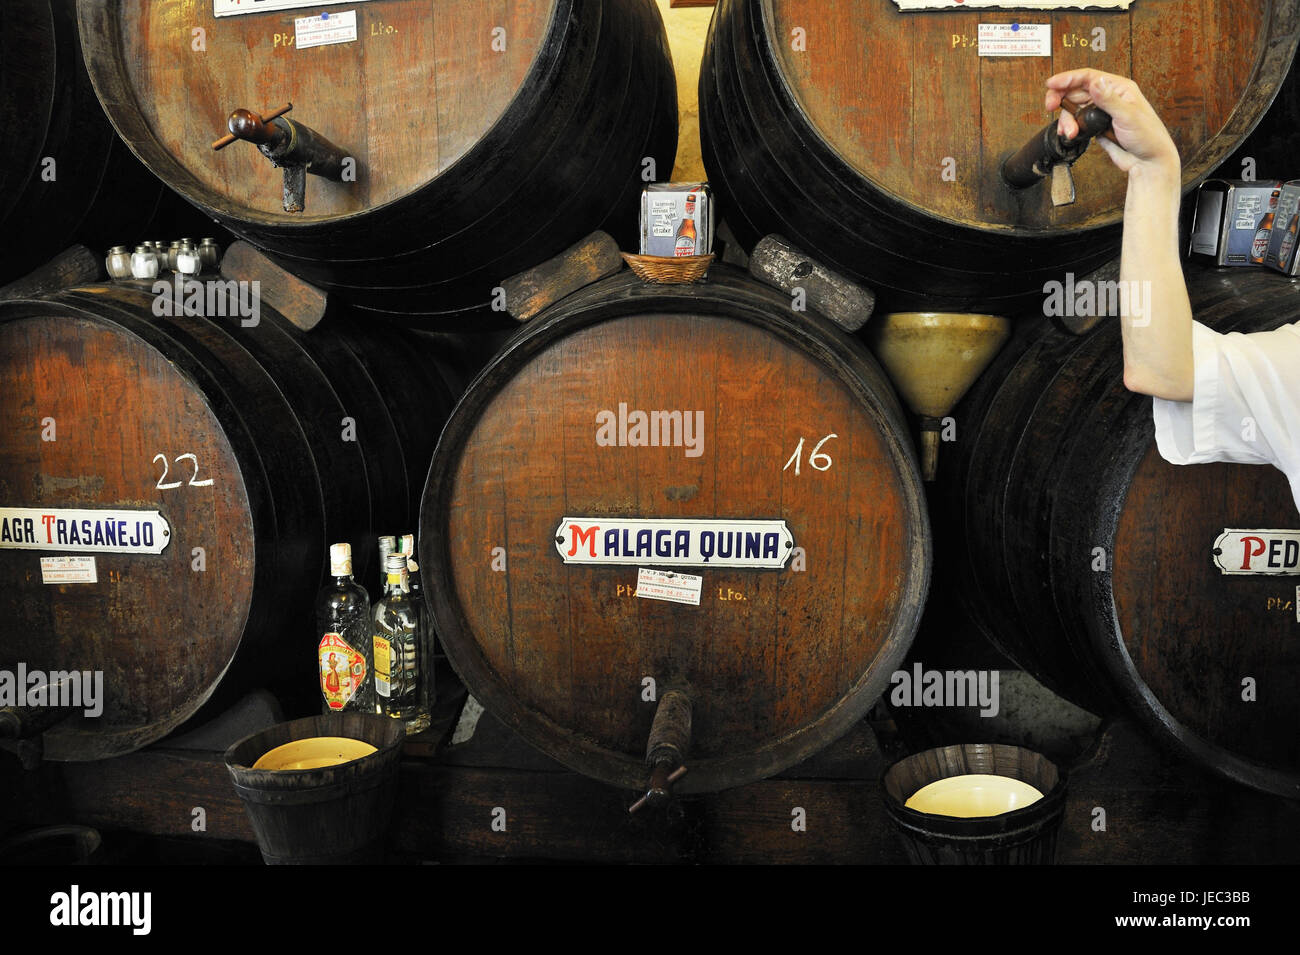 Spain, Malaga, person in a wine cellar, Stock Photo